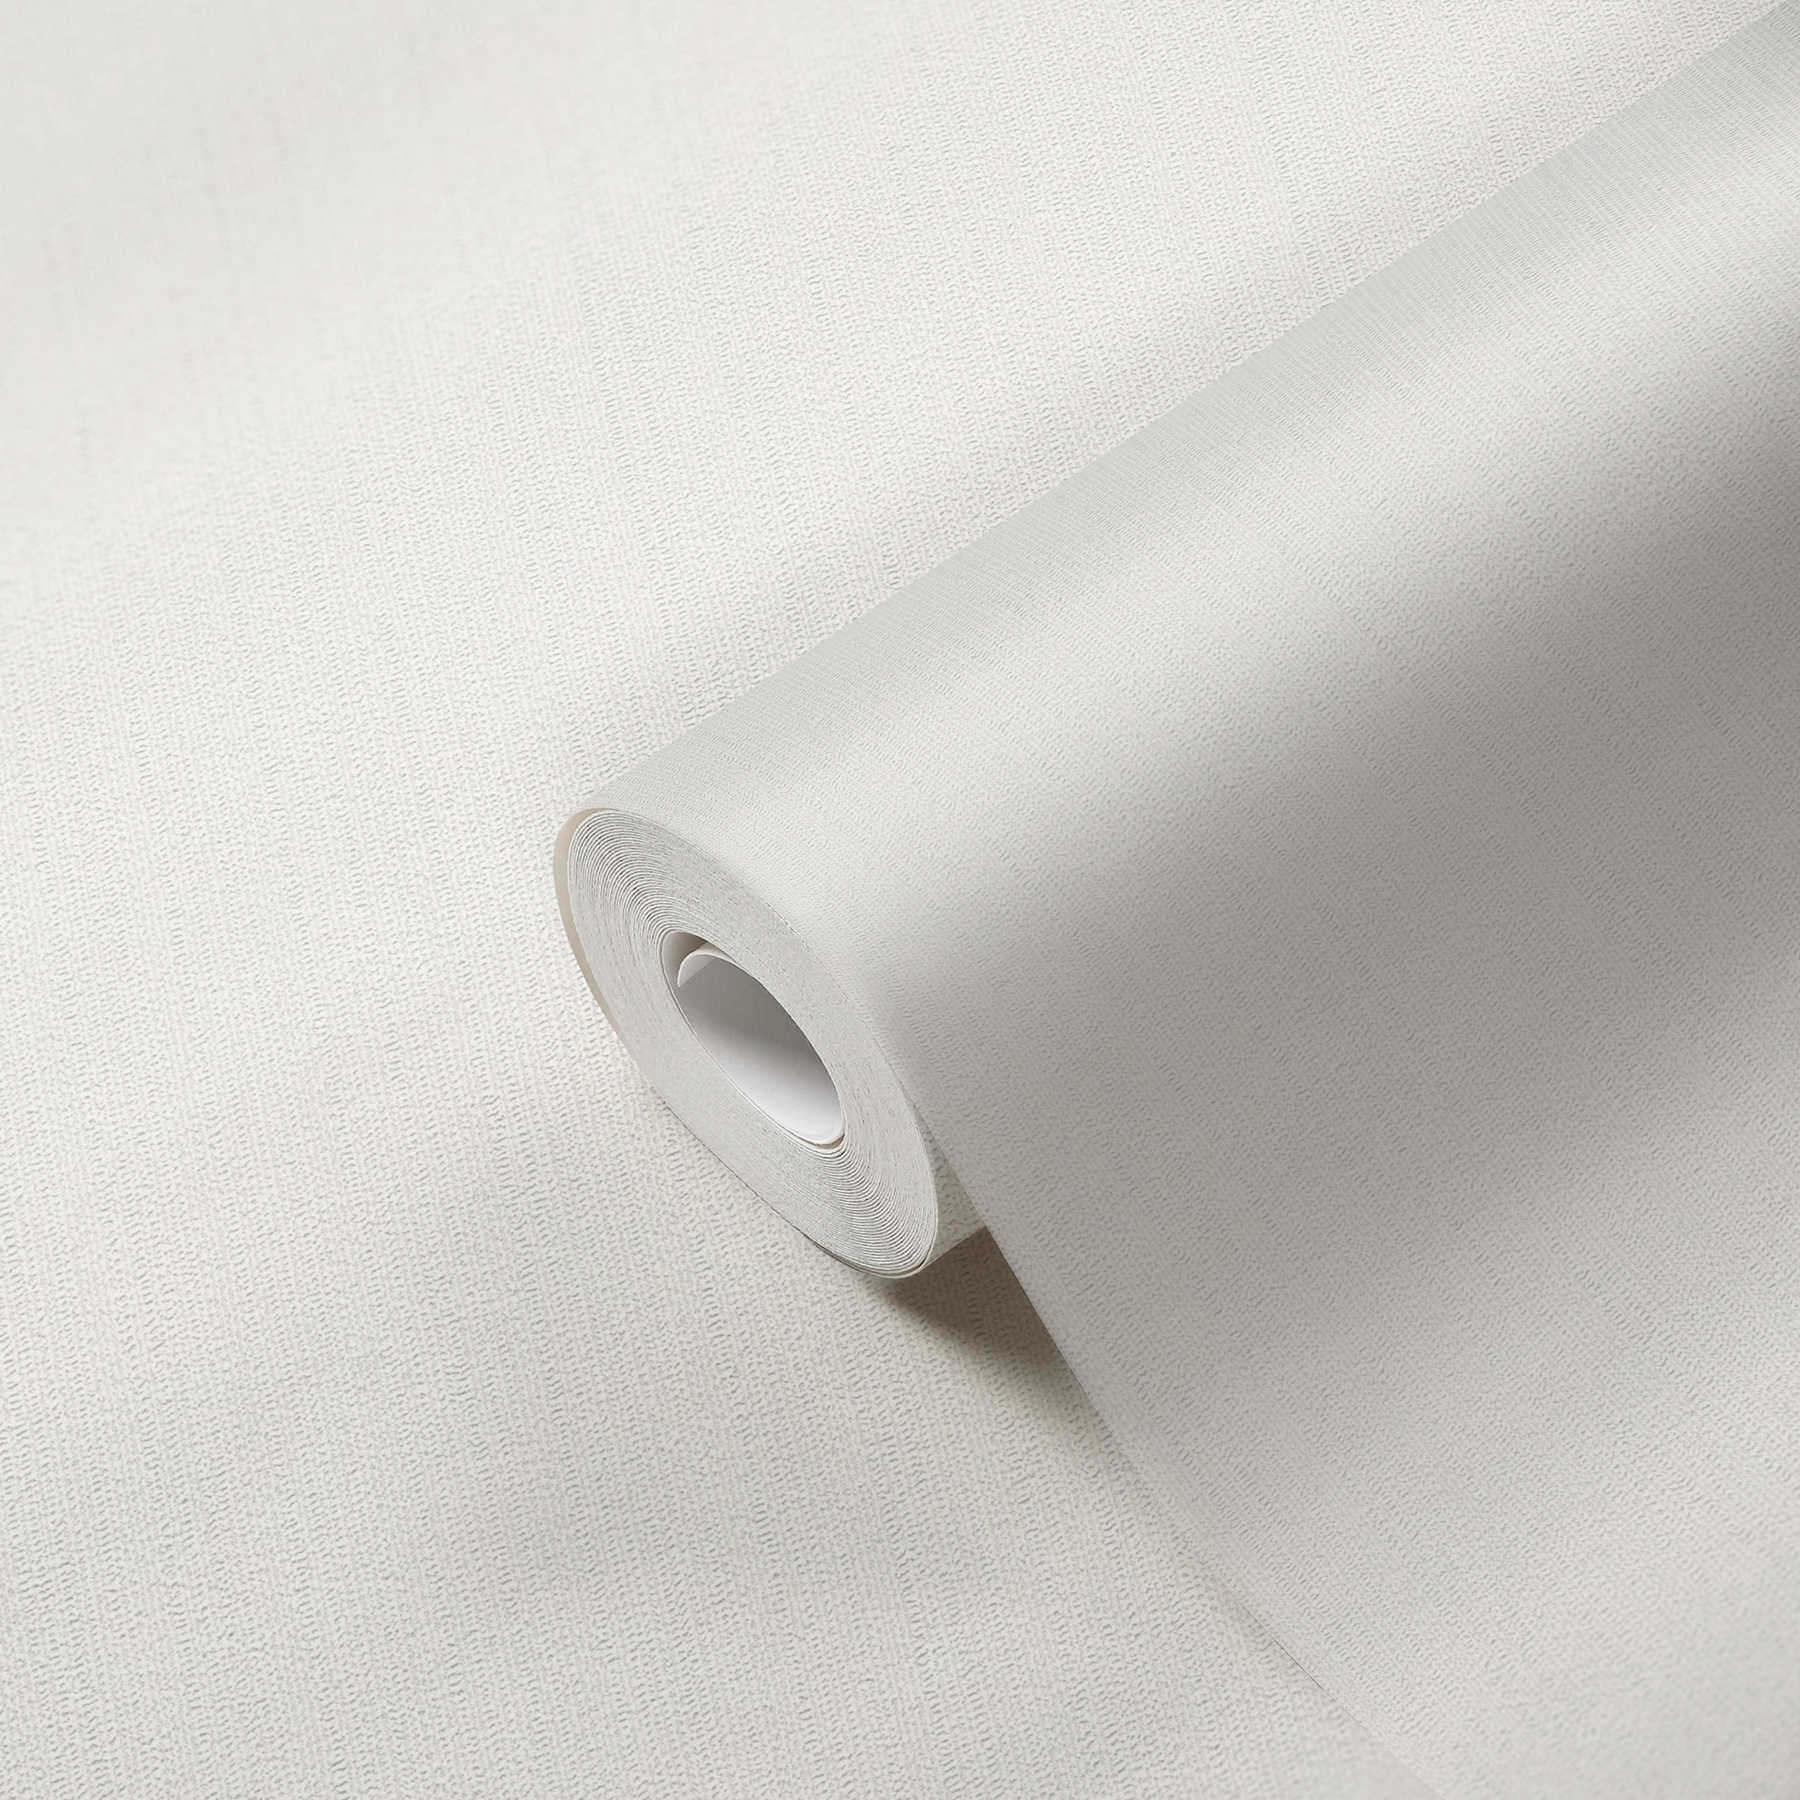             Papier peint intissé blanc uni, mat avec structure de mousse
        